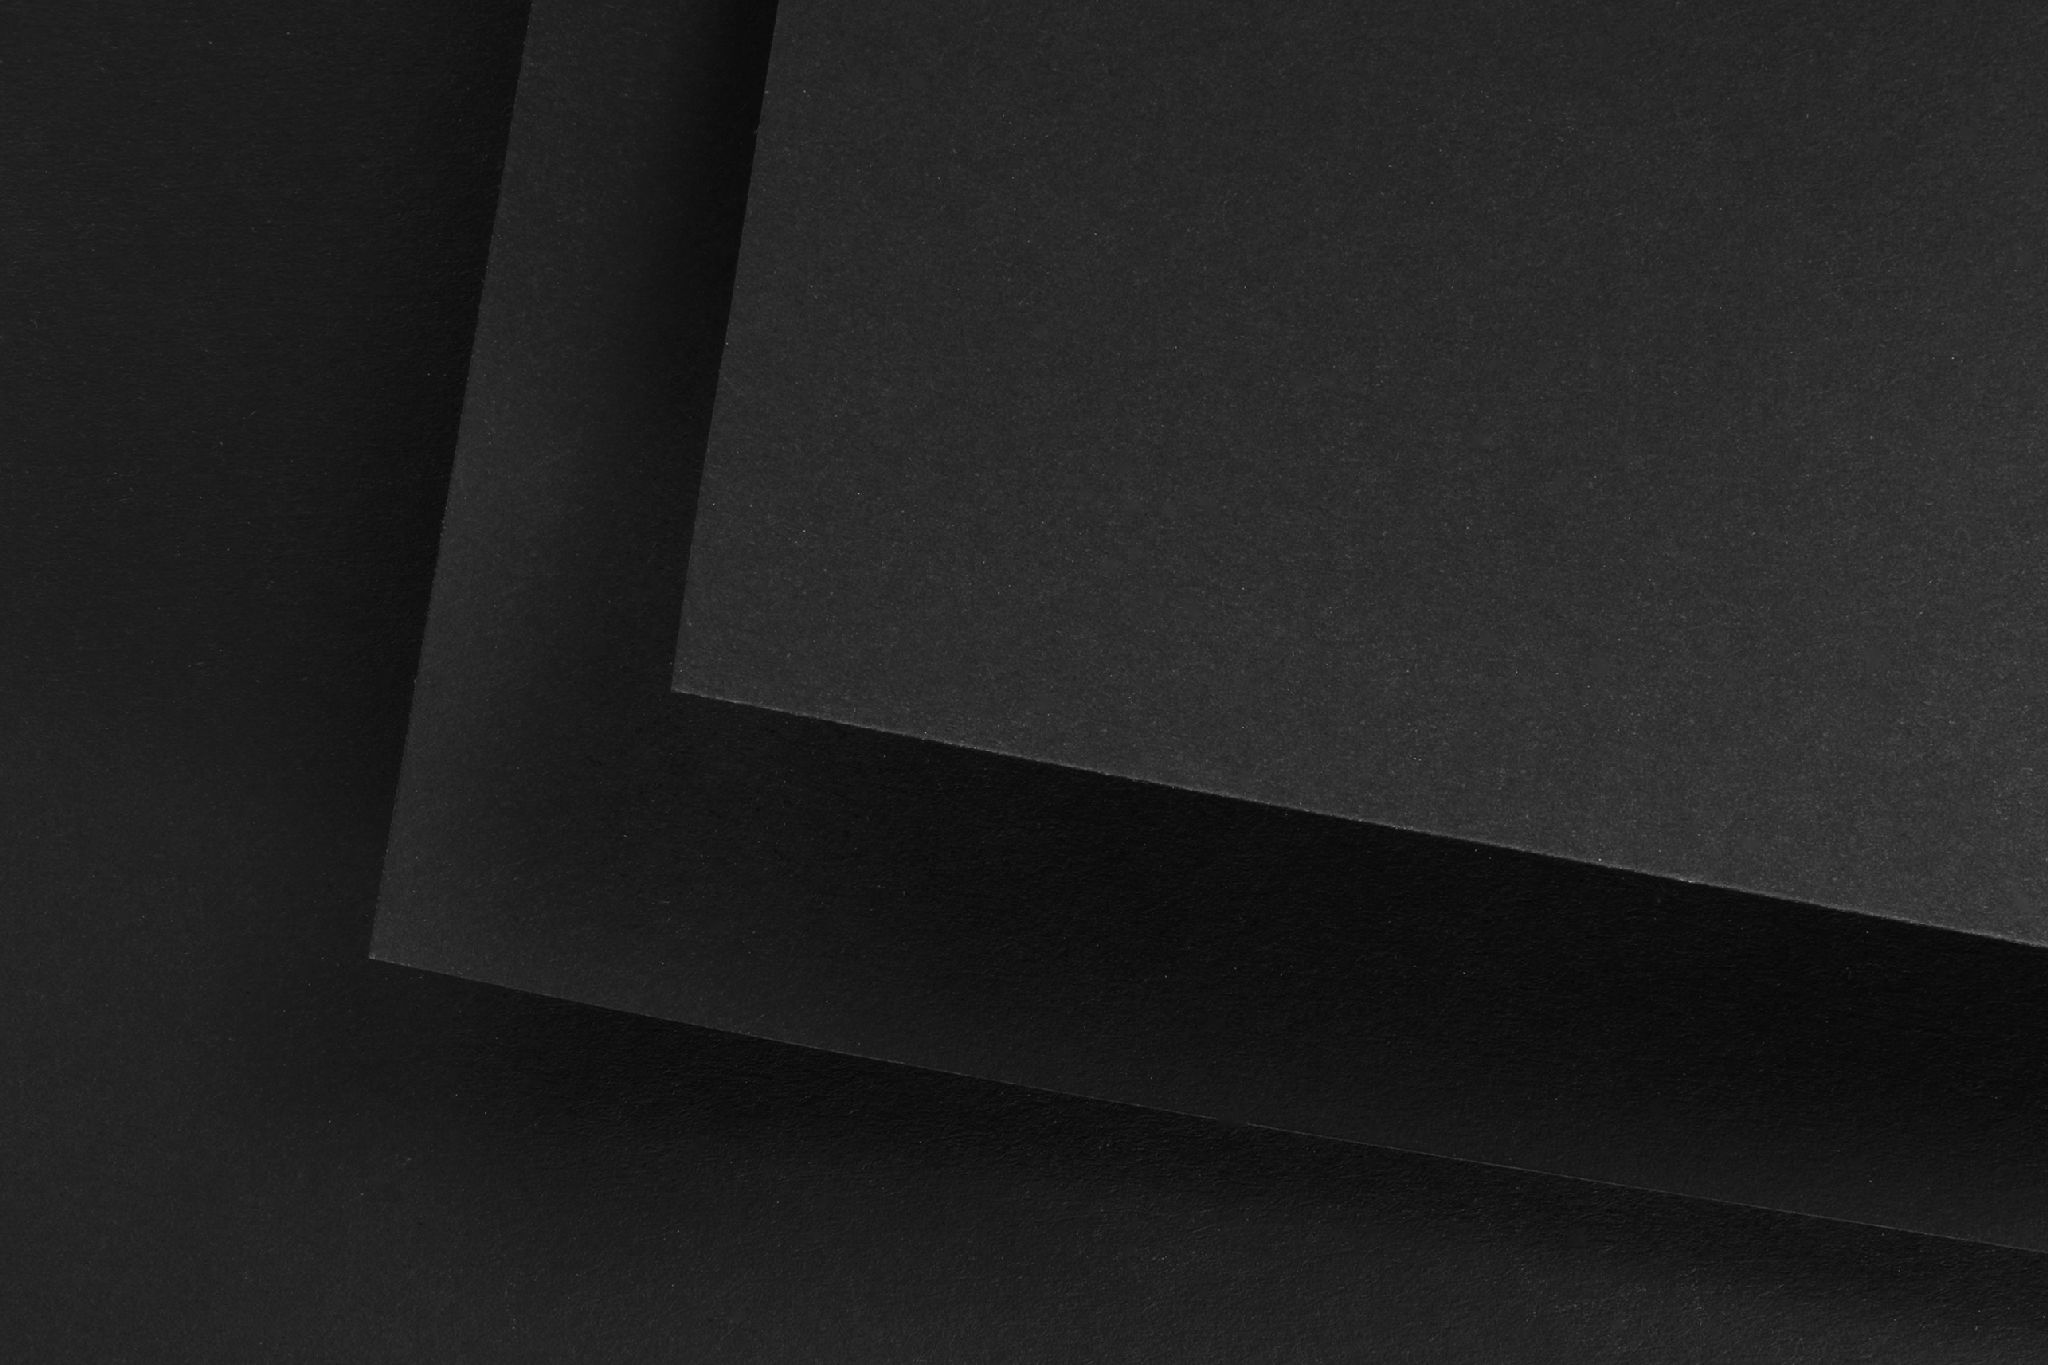 Лист картона черный. Бумага а3 Fabriano черная. Черная матовая бумага. Черная дизайнерская бумага. Дизайнерский картон черный.